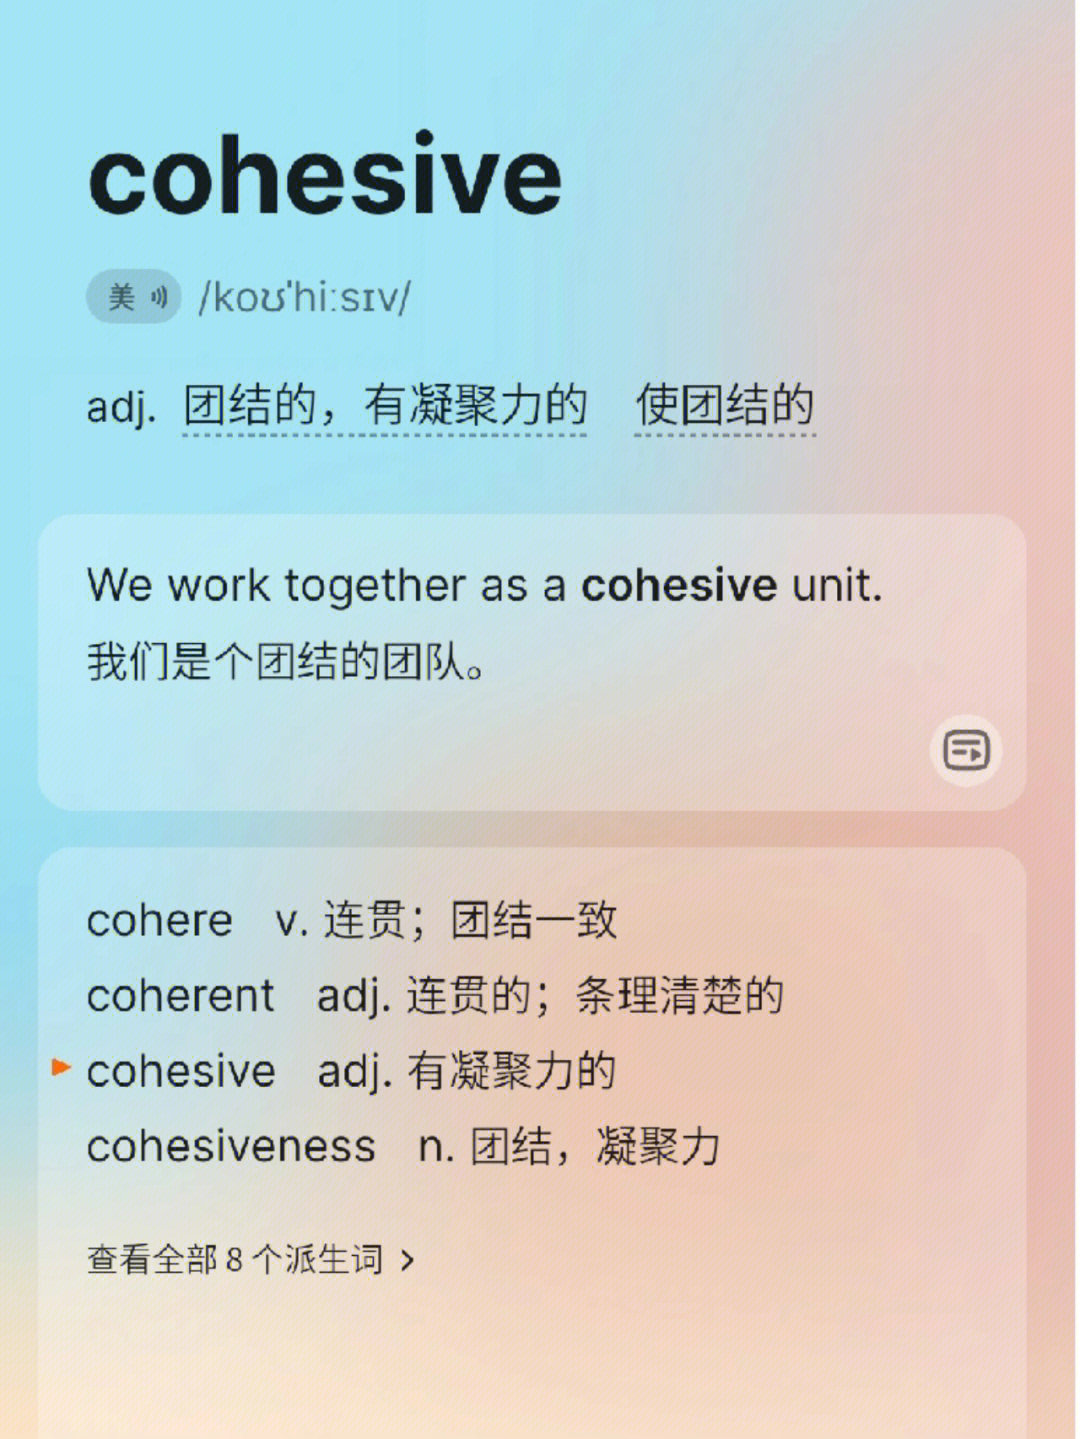 留下一个c开头的单词以及它的汉语意思吧